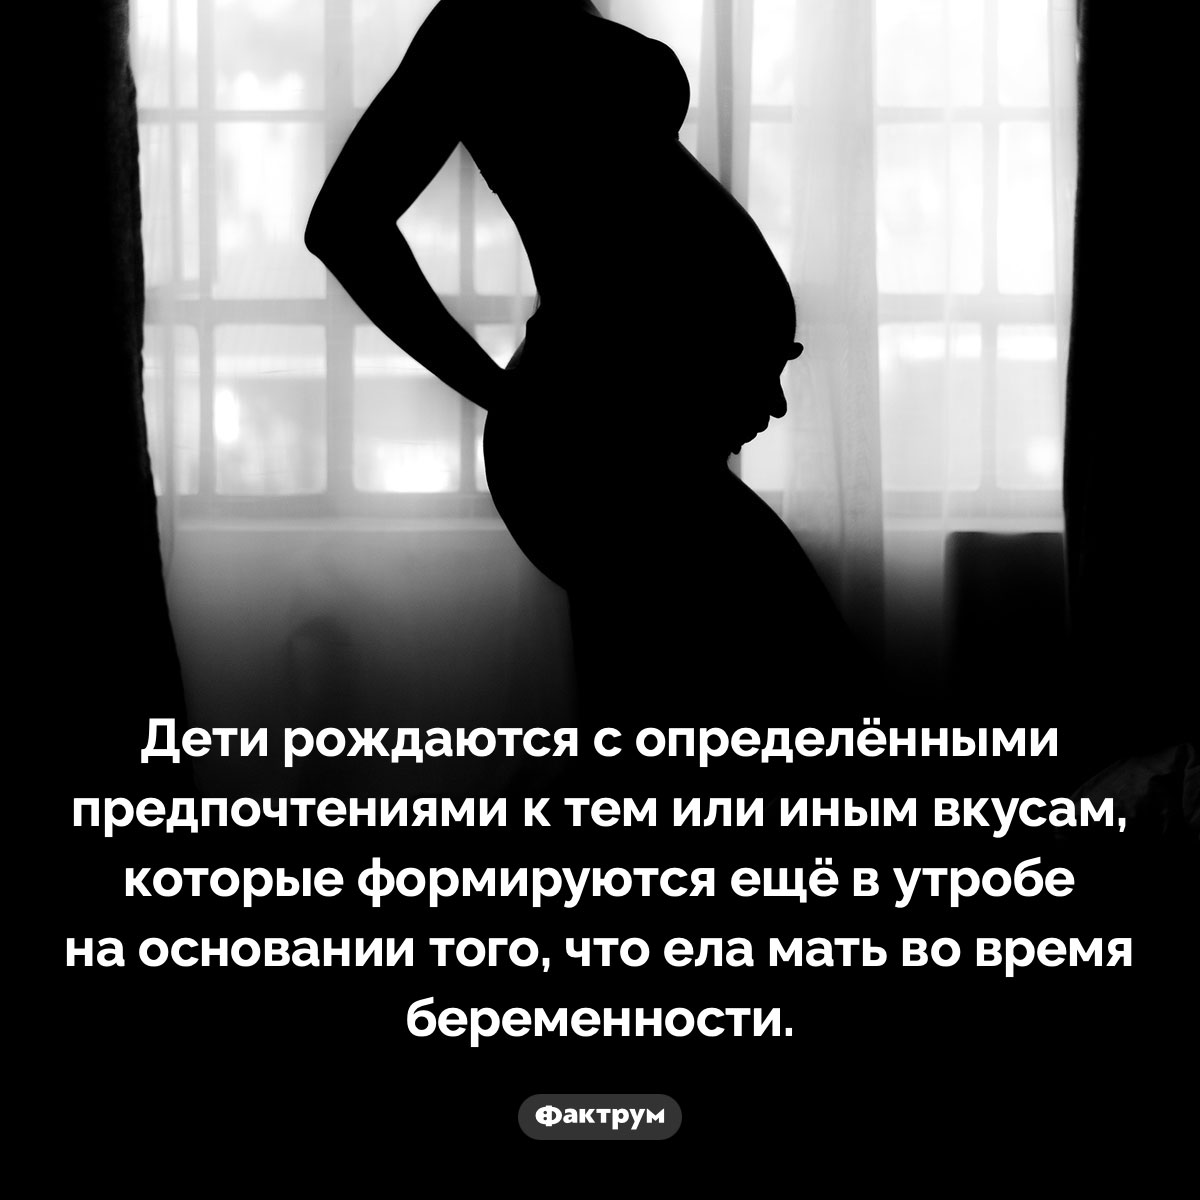 Когда мы рождаемся на свет, у нас уже есть определённые предпочтения в еде. Дети рождаются с определёнными предпочтениями к тем или иным вкусам, которые формируются ещё в утробе на основании того, что ела мать во время беременности.